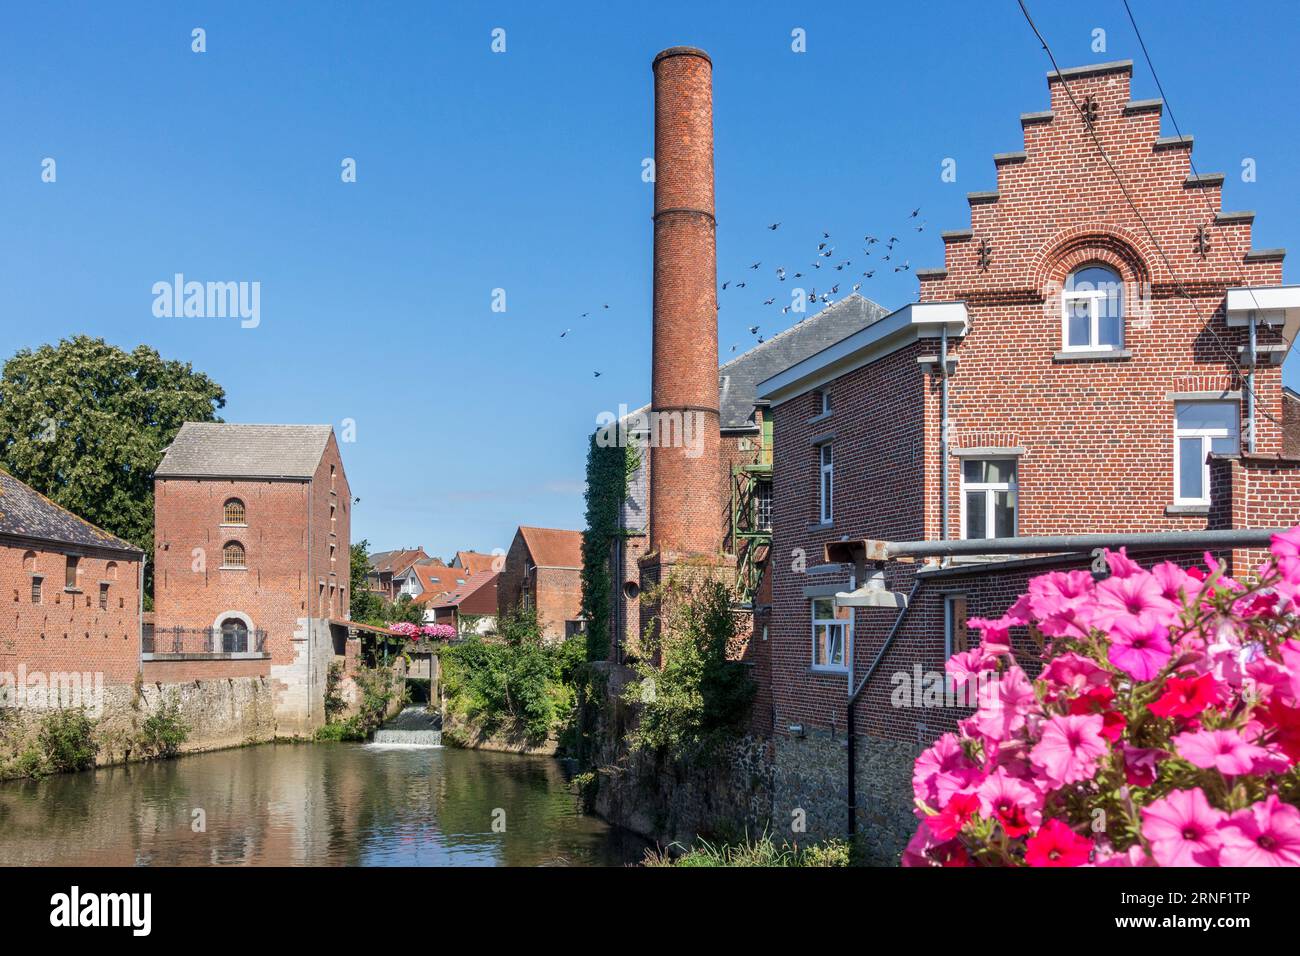 Moulins à eau Arenberg du 14e siècle sur la senne dans le village Rebecq, Brabant Wallon, Wallonie, Belgique Banque D'Images